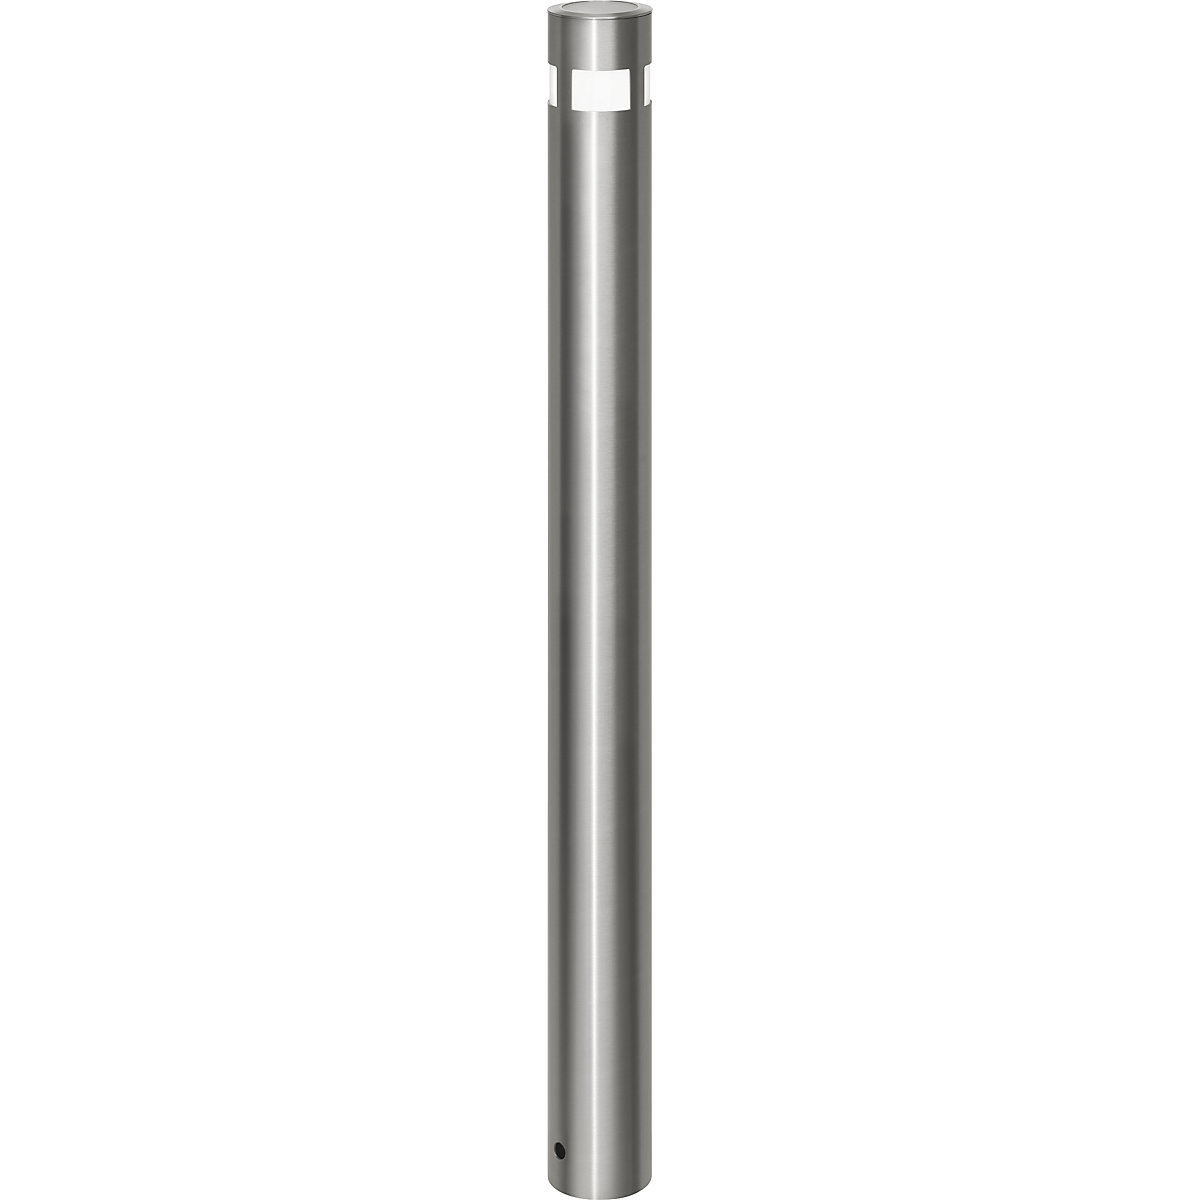 Edelstahl-Sperrpfosten, Ø 102 mm, mit Solar-Leuchtkopf, zum Einbetonieren, herausnehmbar